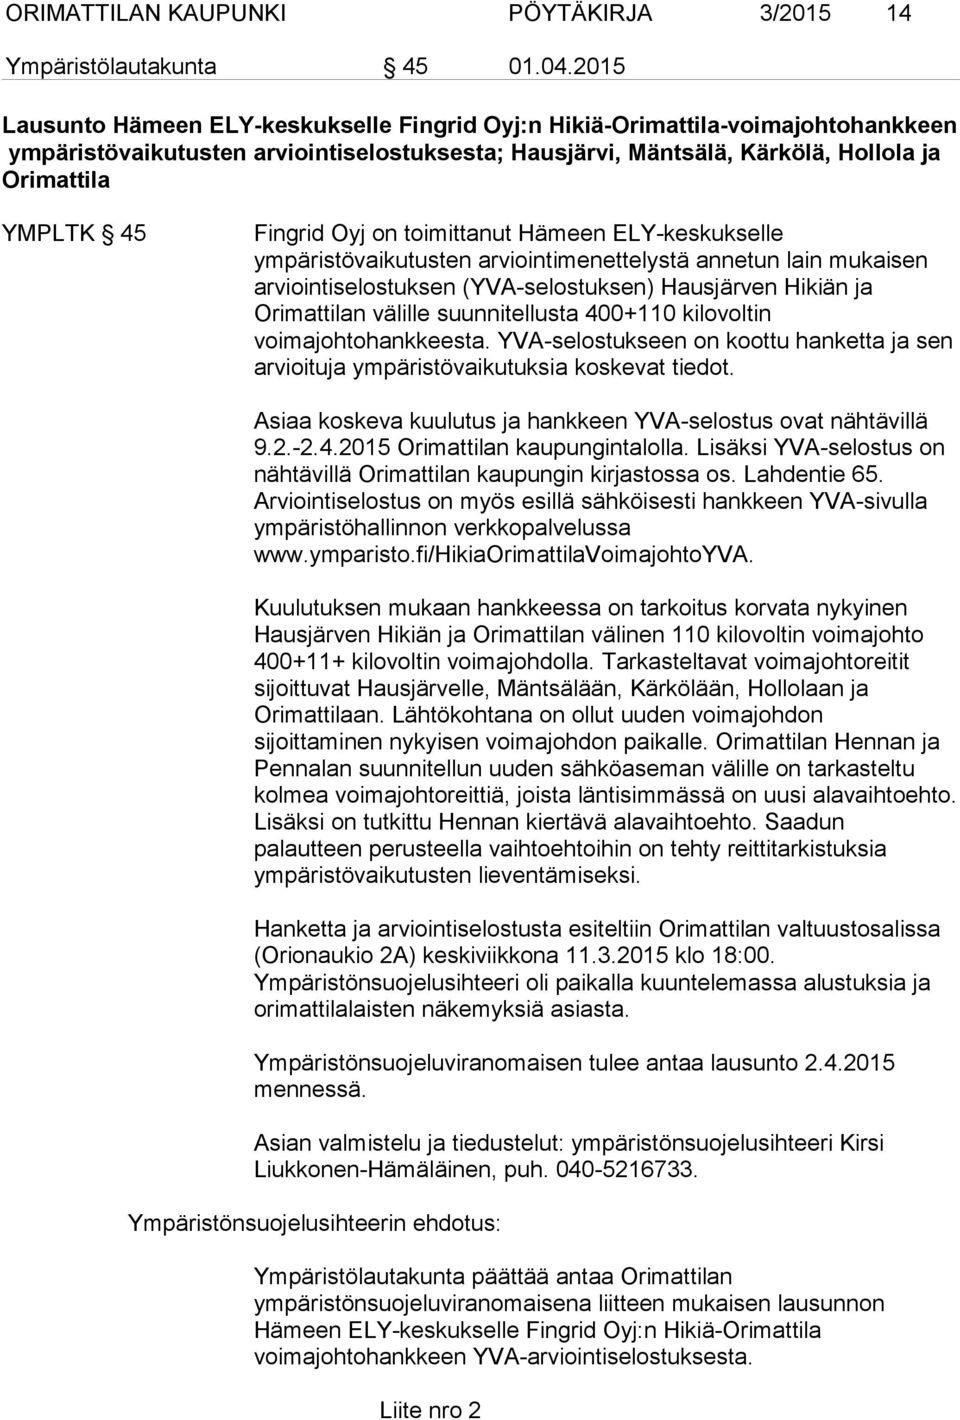 Fingrid Oyj on toimittanut Hämeen ELY-keskukselle ympäristövaikutusten arviointimenettelystä annetun lain mukaisen arviointiselostuksen (YVA-selostuksen) Hausjärven Hikiän ja Orimattilan välille